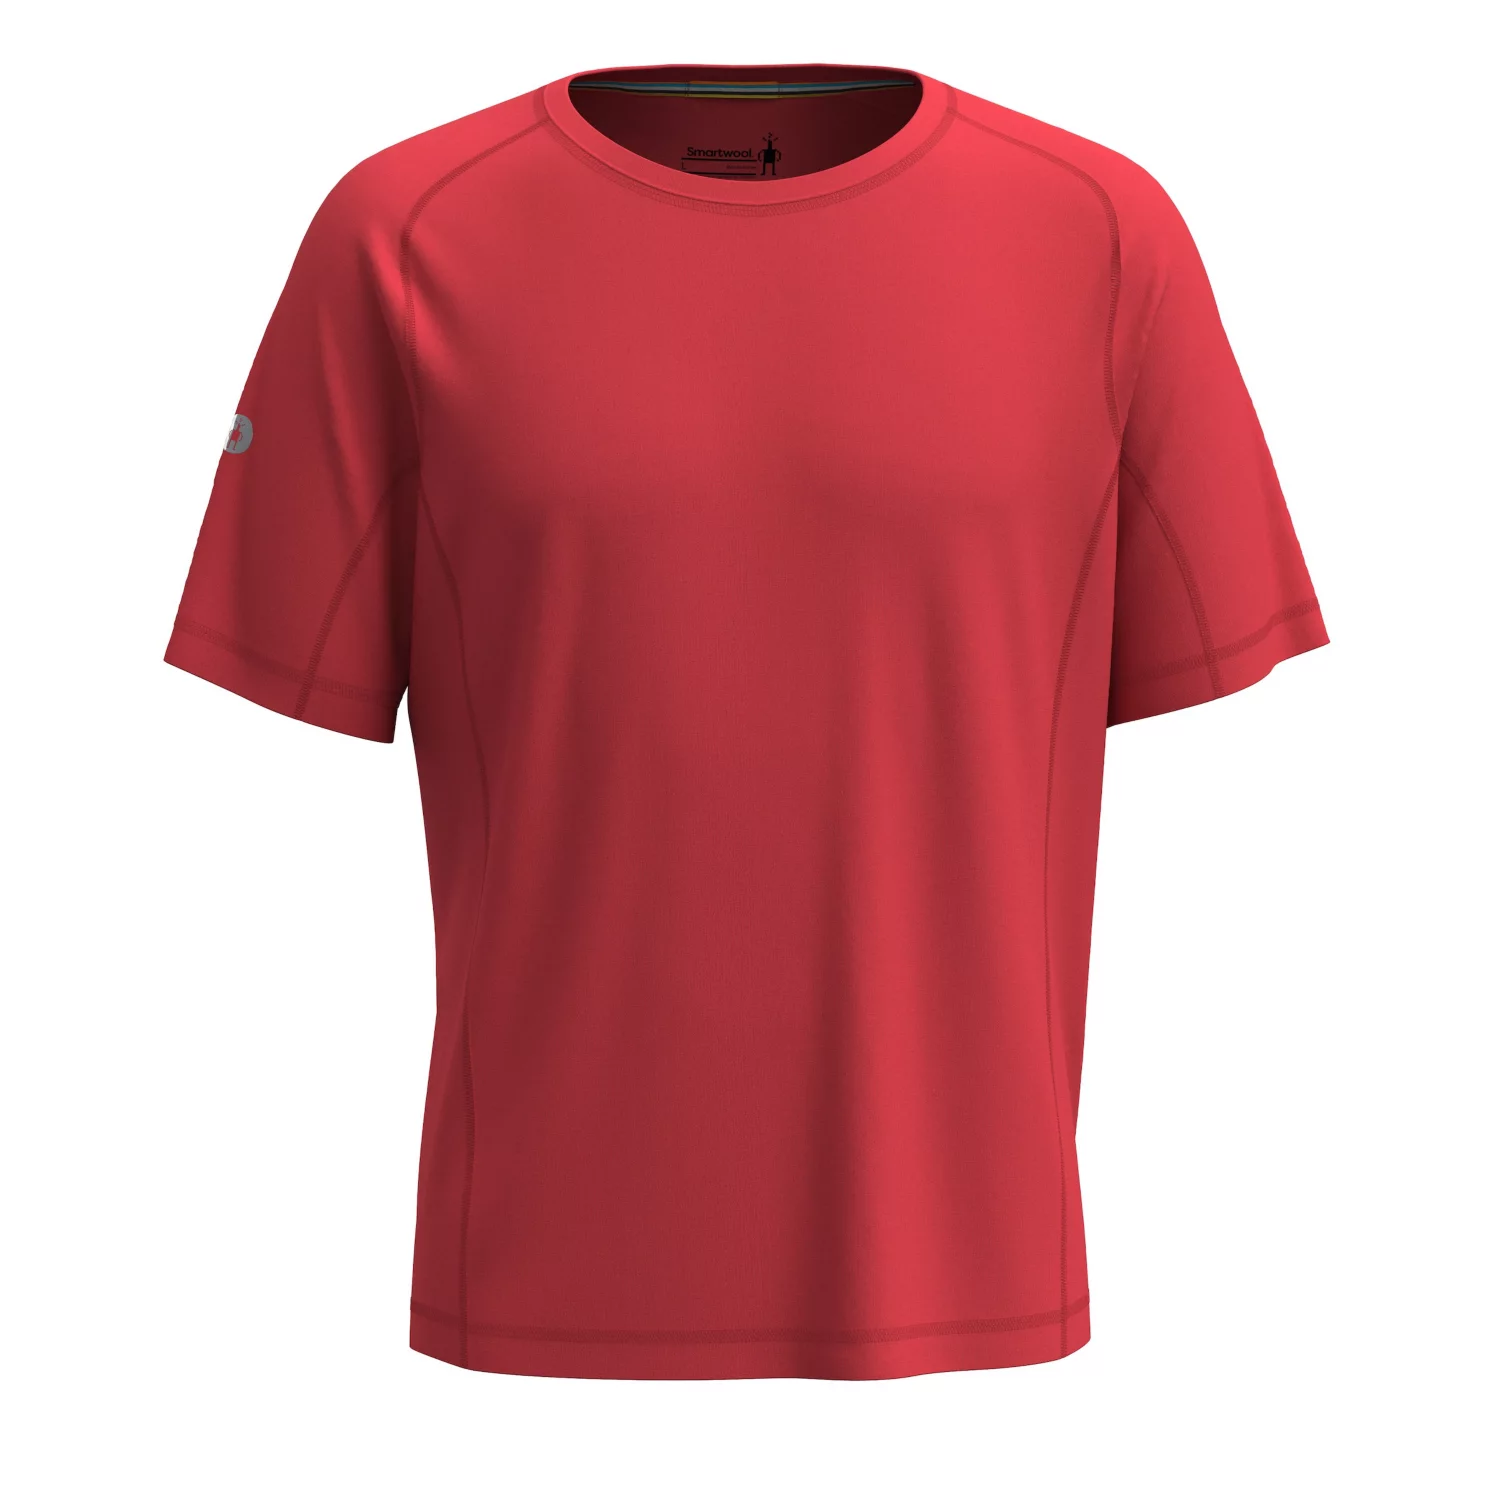 Smartwool Men’s Merino Sport Ultralite Short Sleeve Scarlet Red